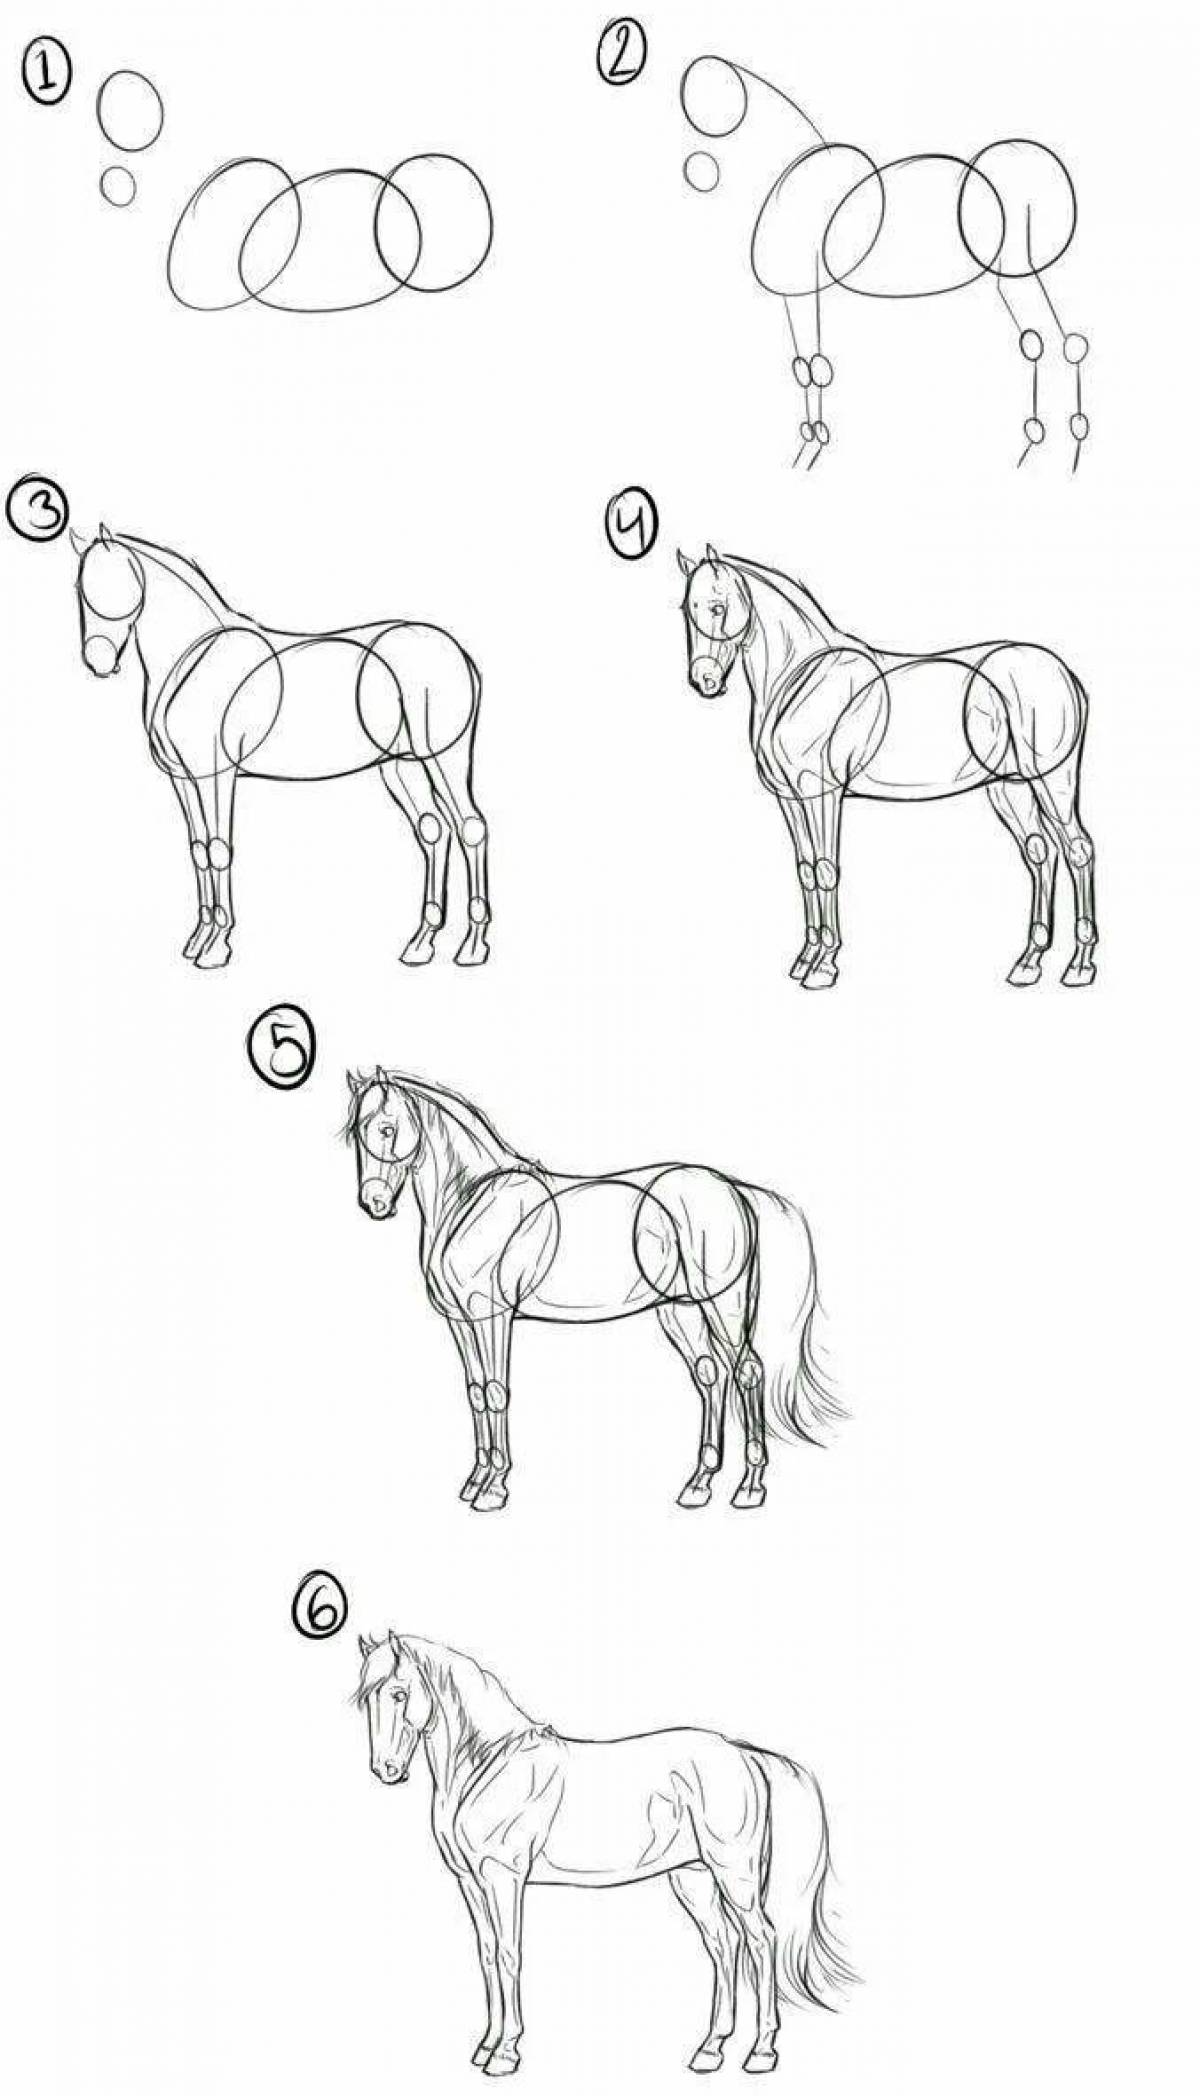 Учимся рисовать поэтапно для начинающих с нуля. Как научиться рисовать лошадь. Пошаговое рисование лошади. Лошадь карандашом. Схема рисования лошади карандашом.